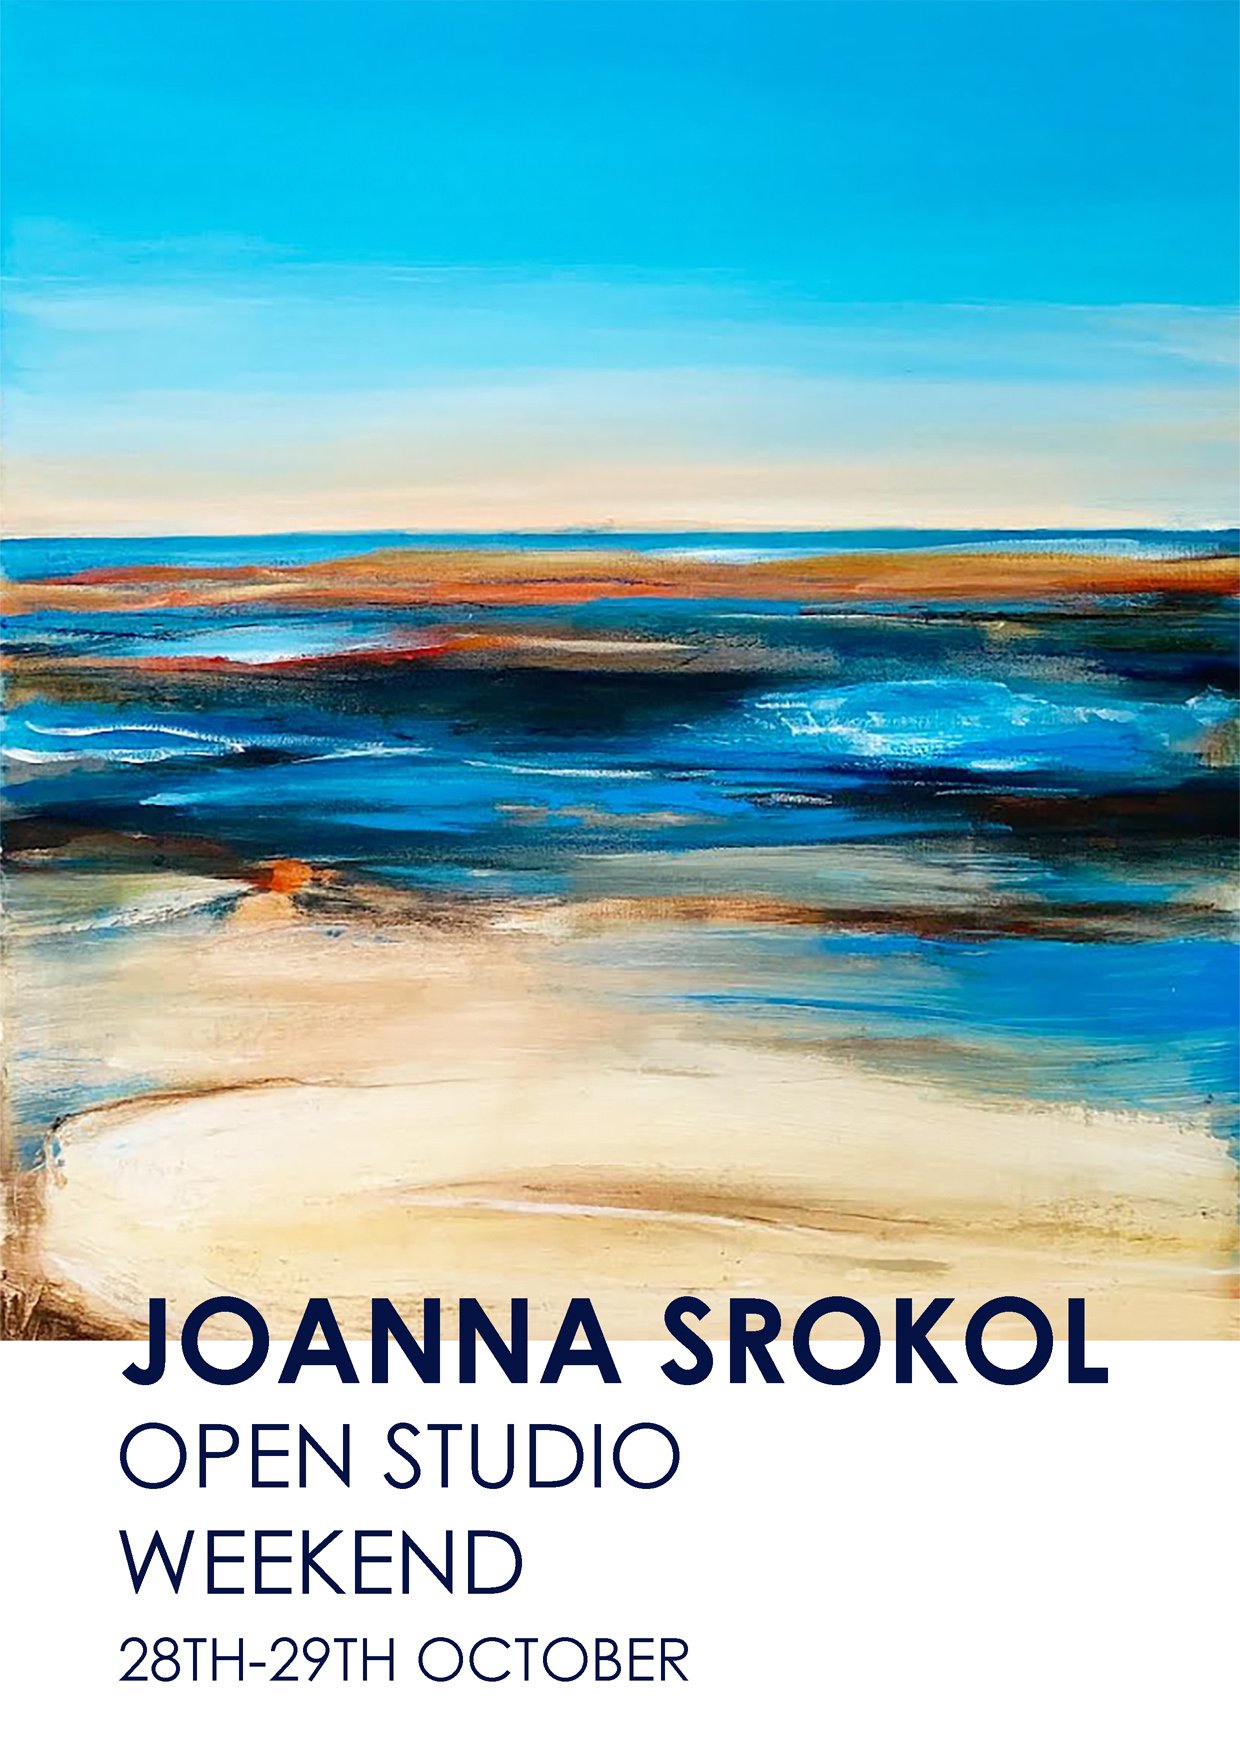 J.Srokol, Open Studio Weekend 28-29th Octoberjpg.jpg